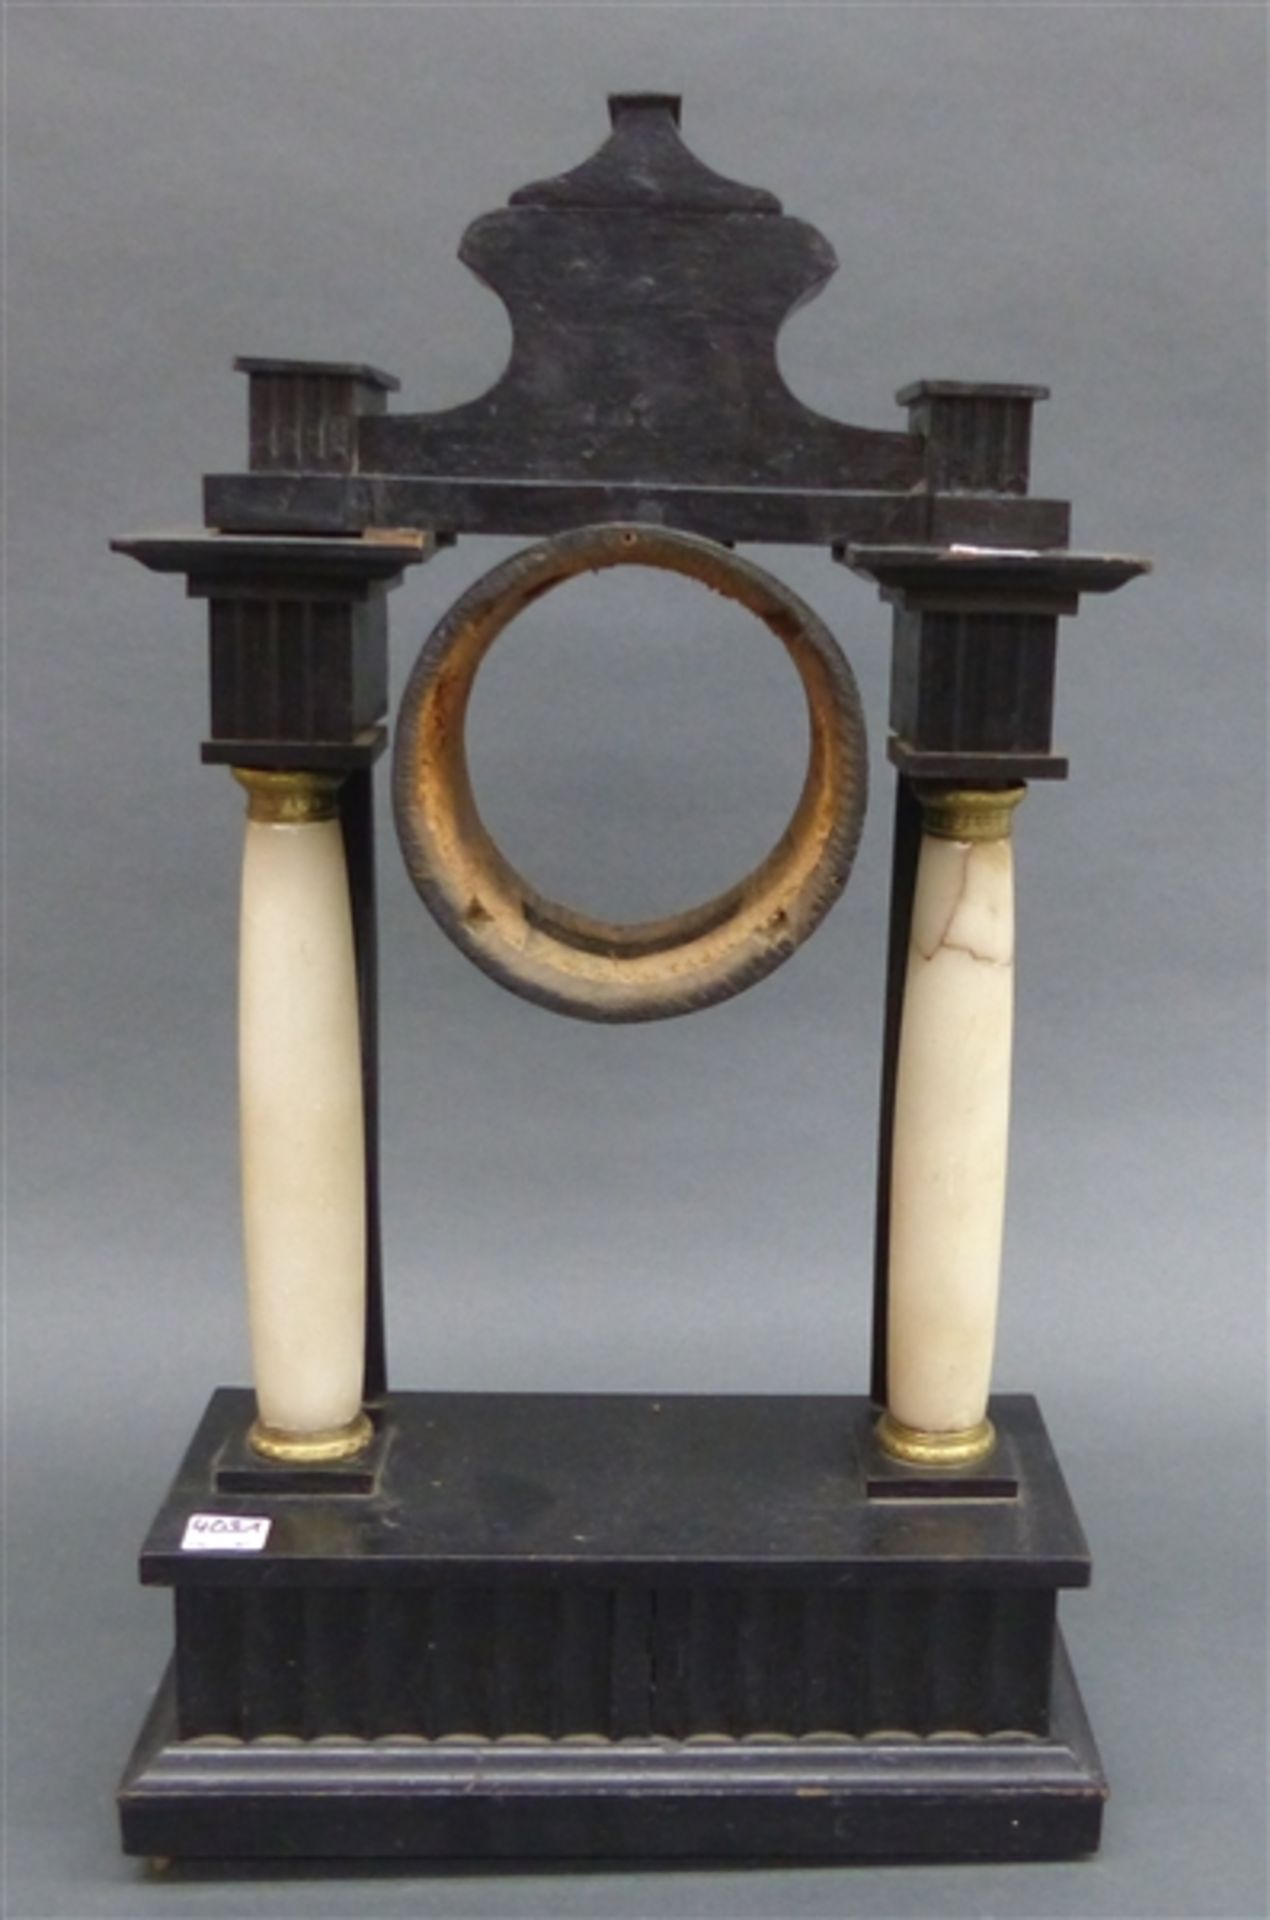 Uhrengehäuse, 19. Jh. Wiener Säulenuhr, Alabaster und Holz, h 50 cm,